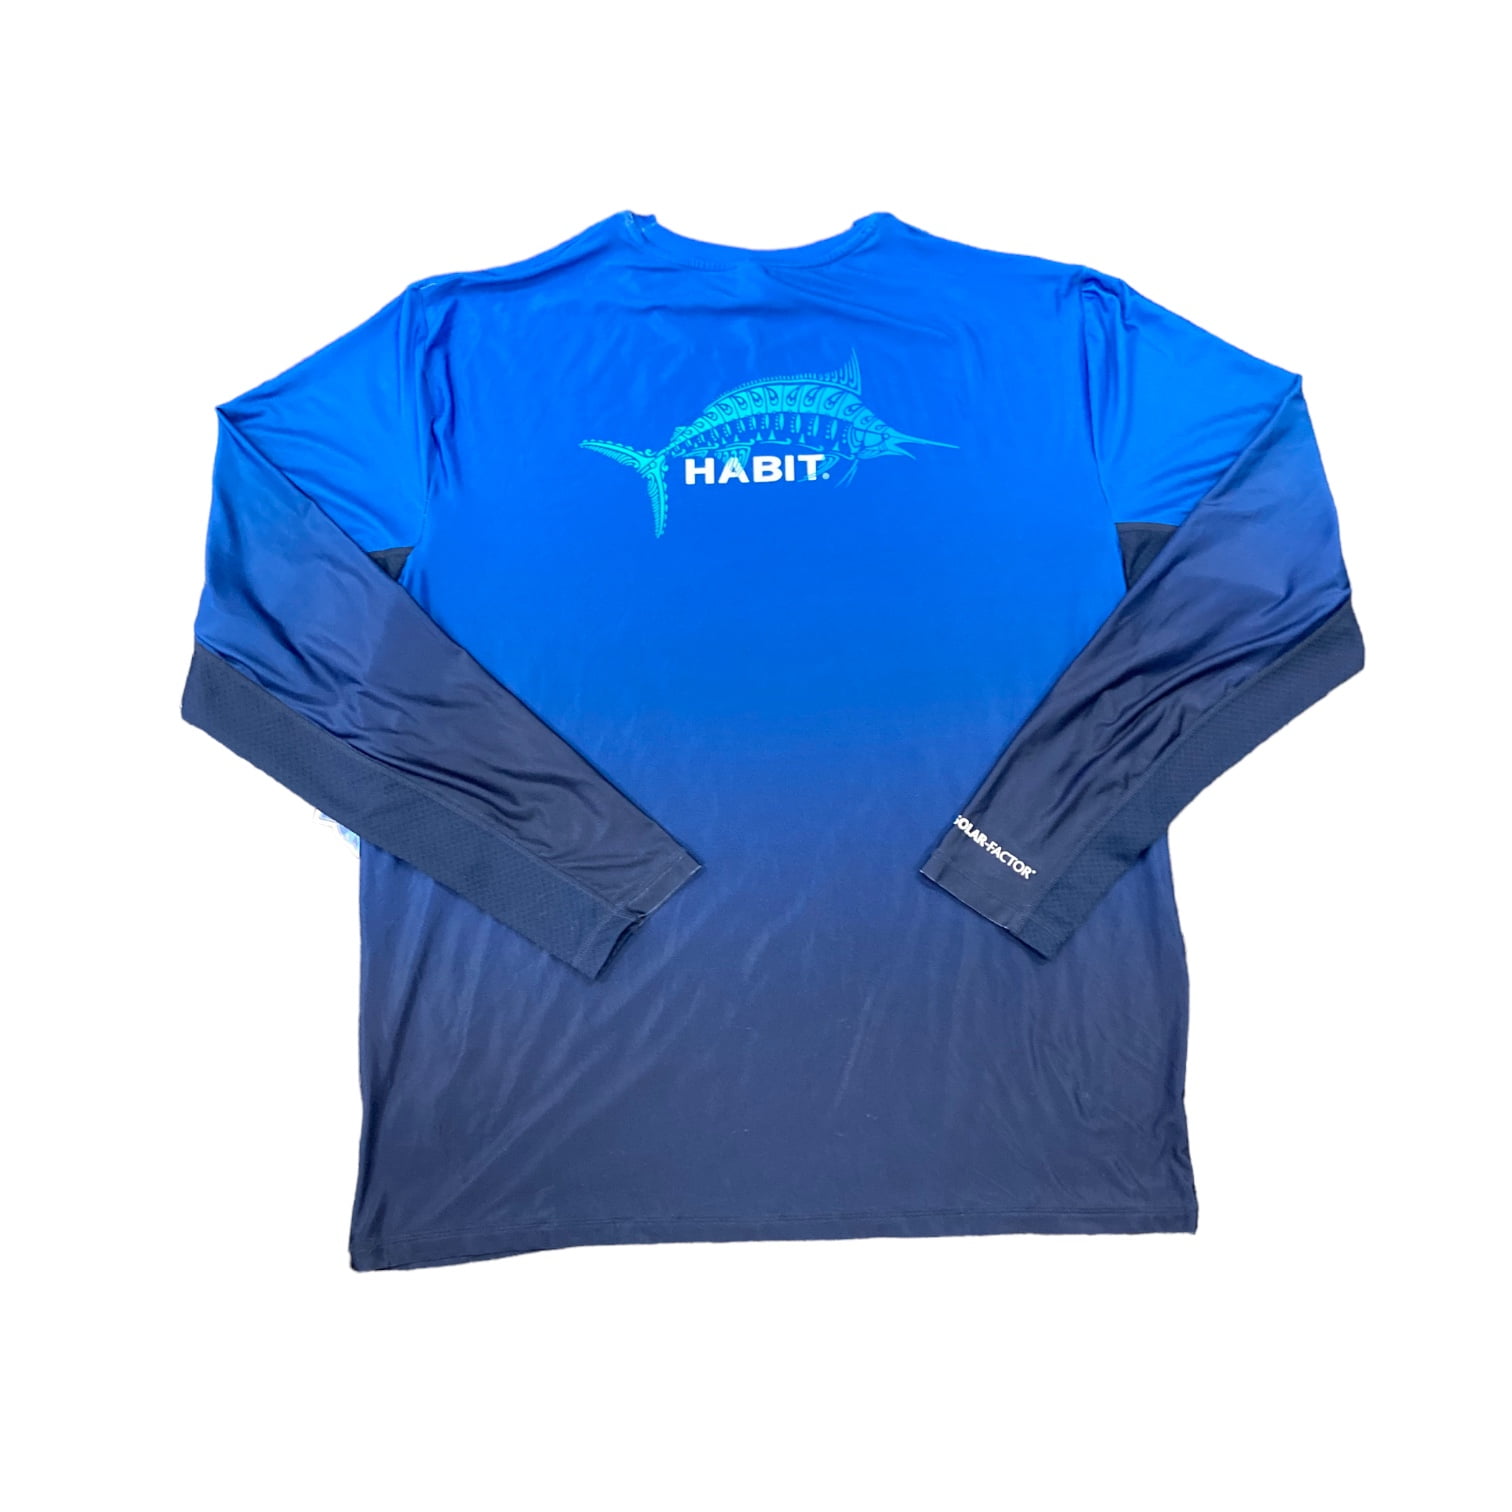 Habit Fishing Shirt Solar Factor 40+ Men’s Size Medium Blue Fish Swim Sun  EUC 